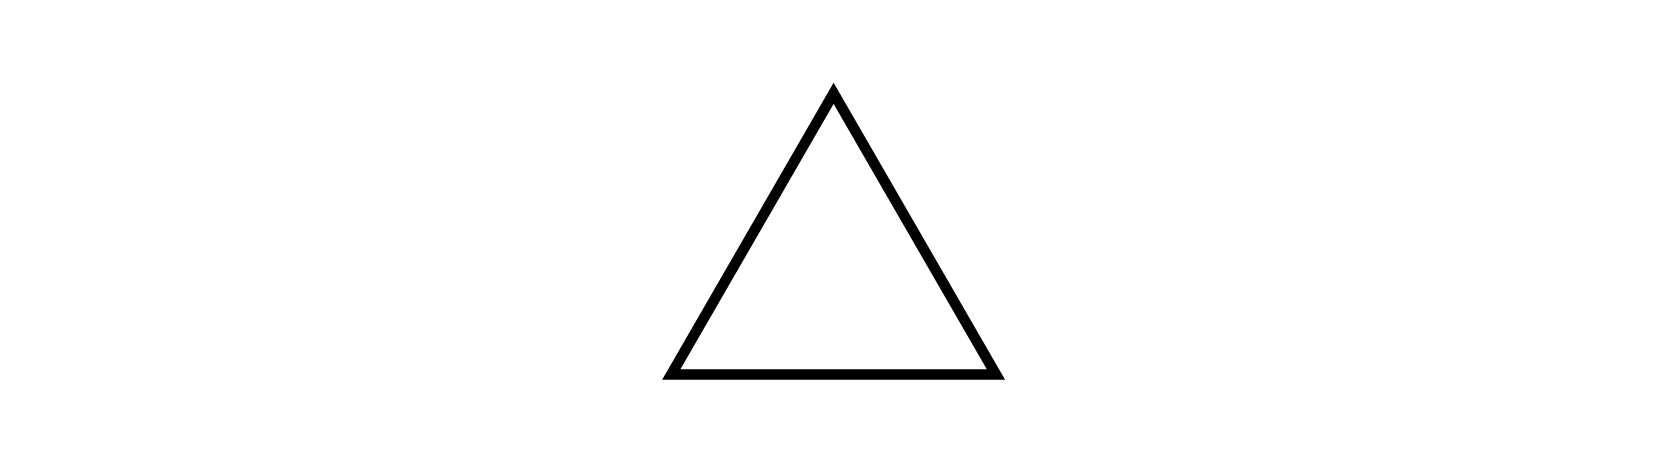 psicología de la forma triángulo